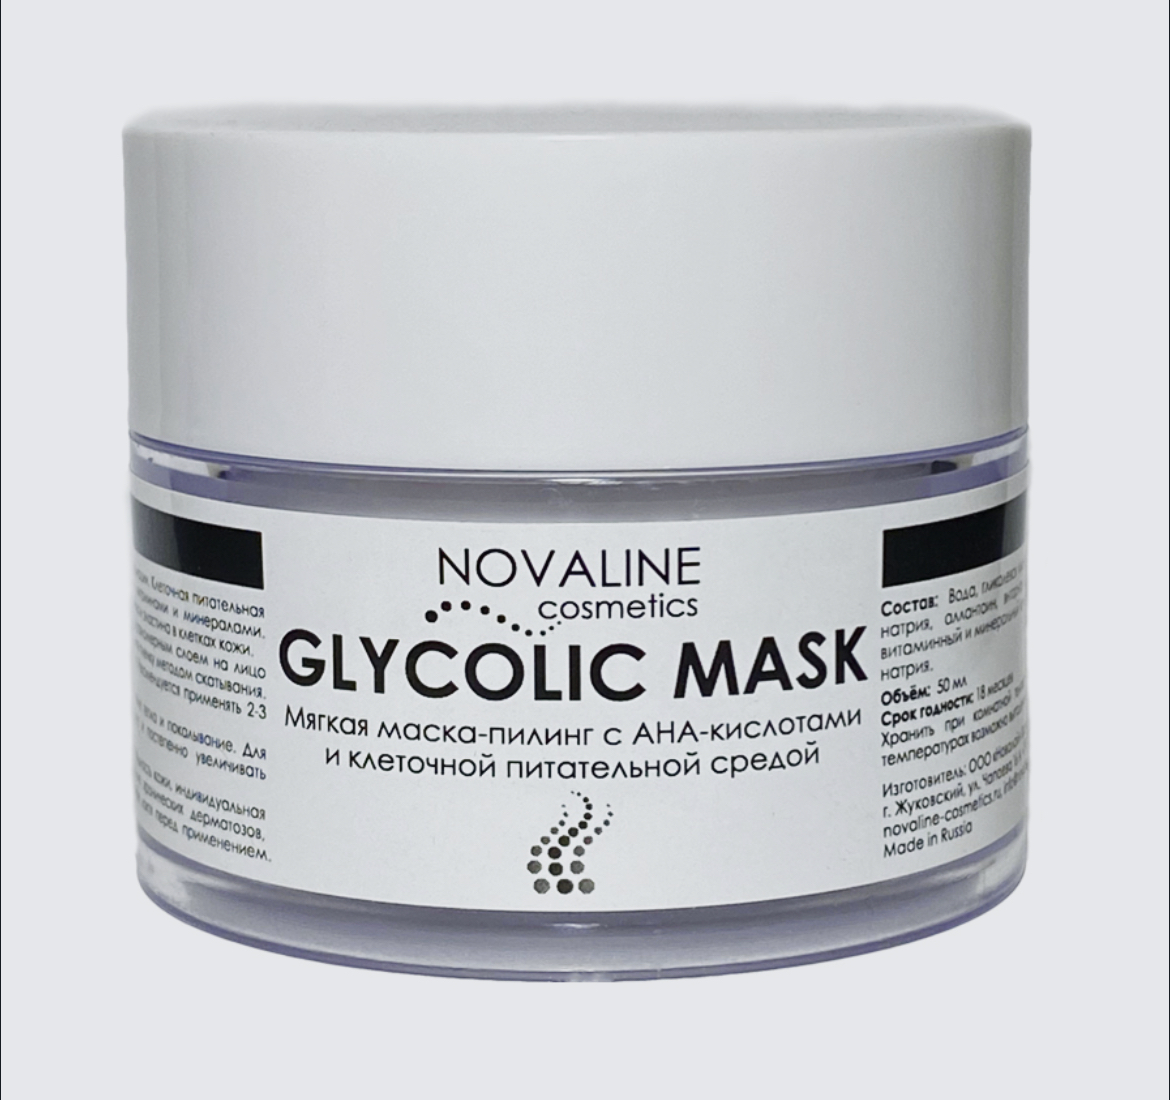 Novaline. Novaline Cosmetics пилинг с 12% гликолевой кислотой. НОВАЛАЙН маска. Маска для лица с коллоидным серебром. Энзимный пилинг комплимент.